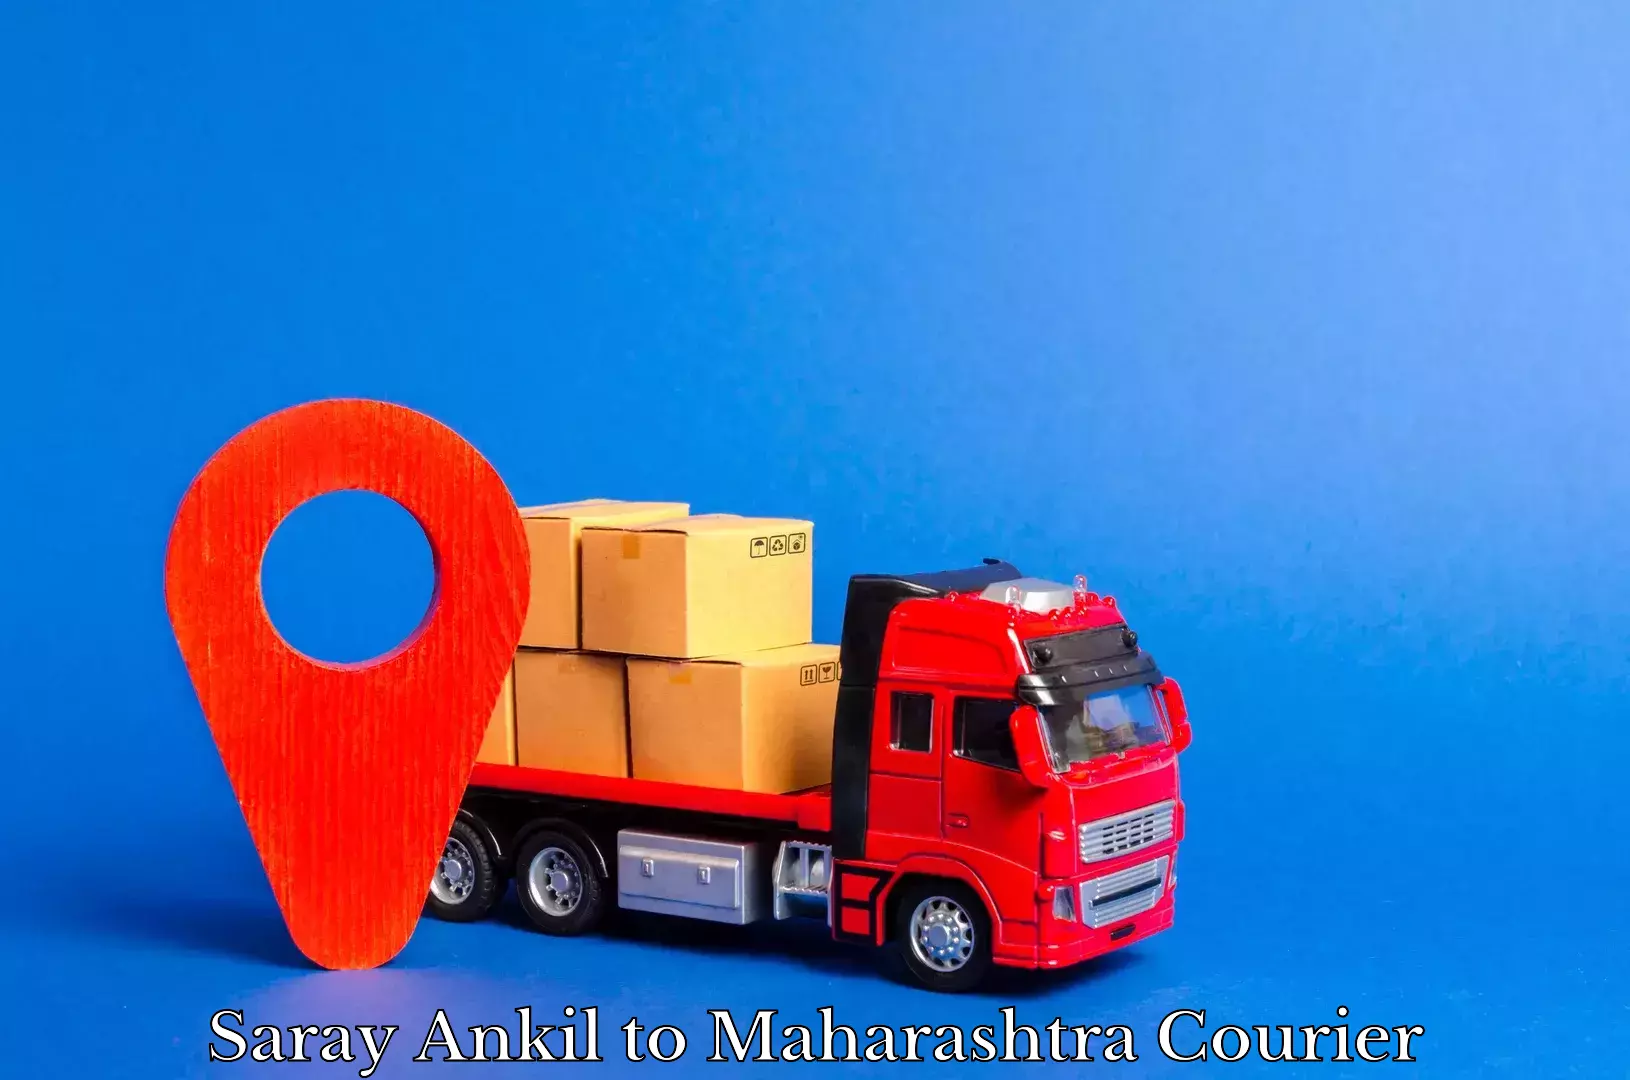 Comprehensive shipping network Saray Ankil to Maharashtra